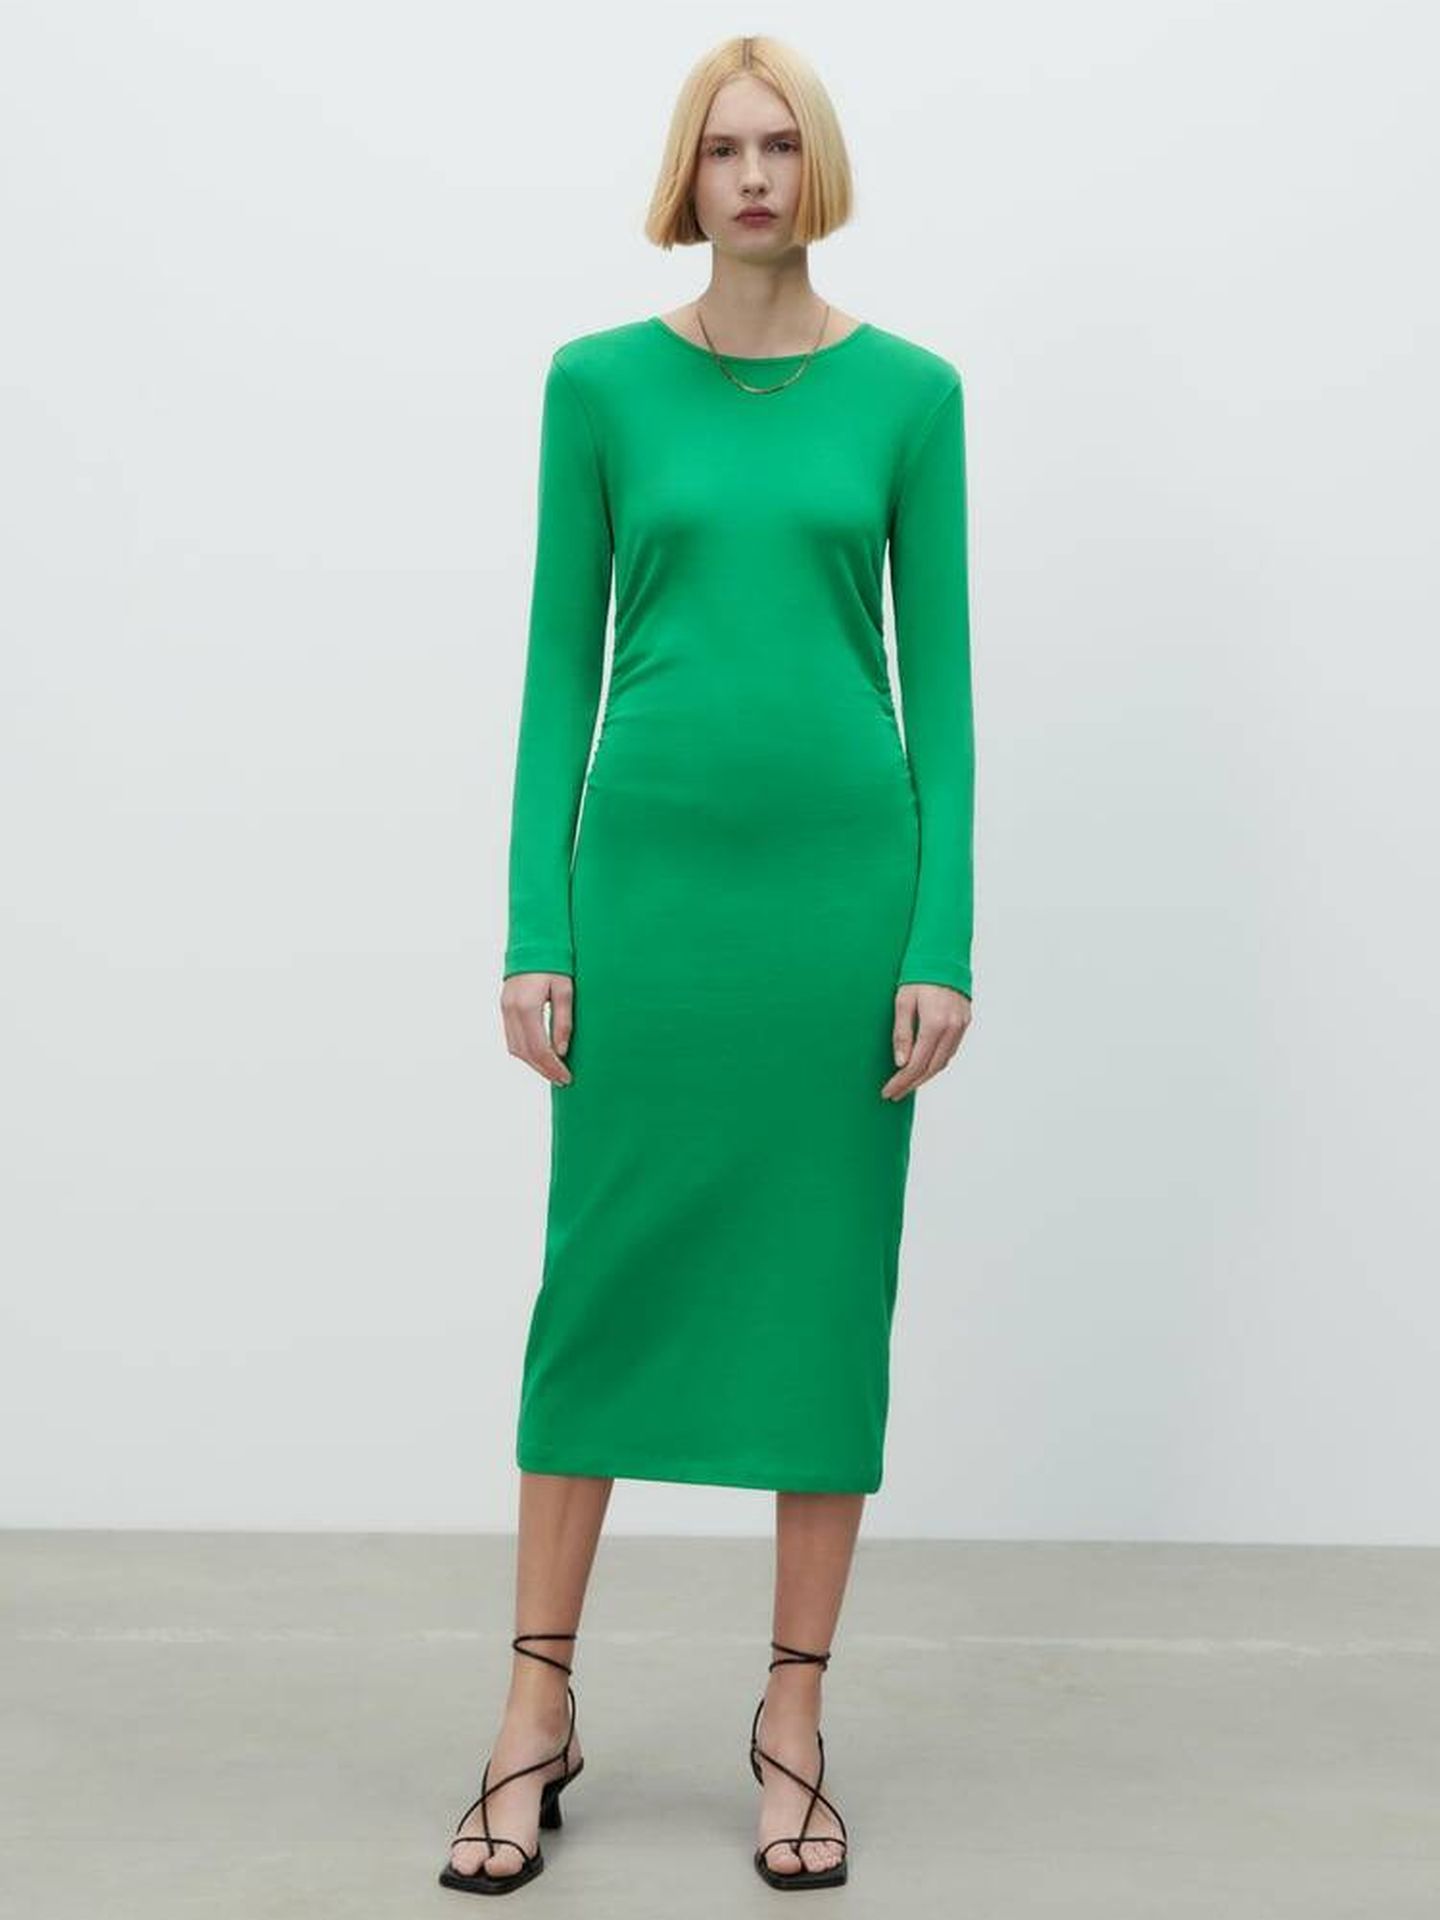 El nuevo vestido verde de Zara. (Cortesía)